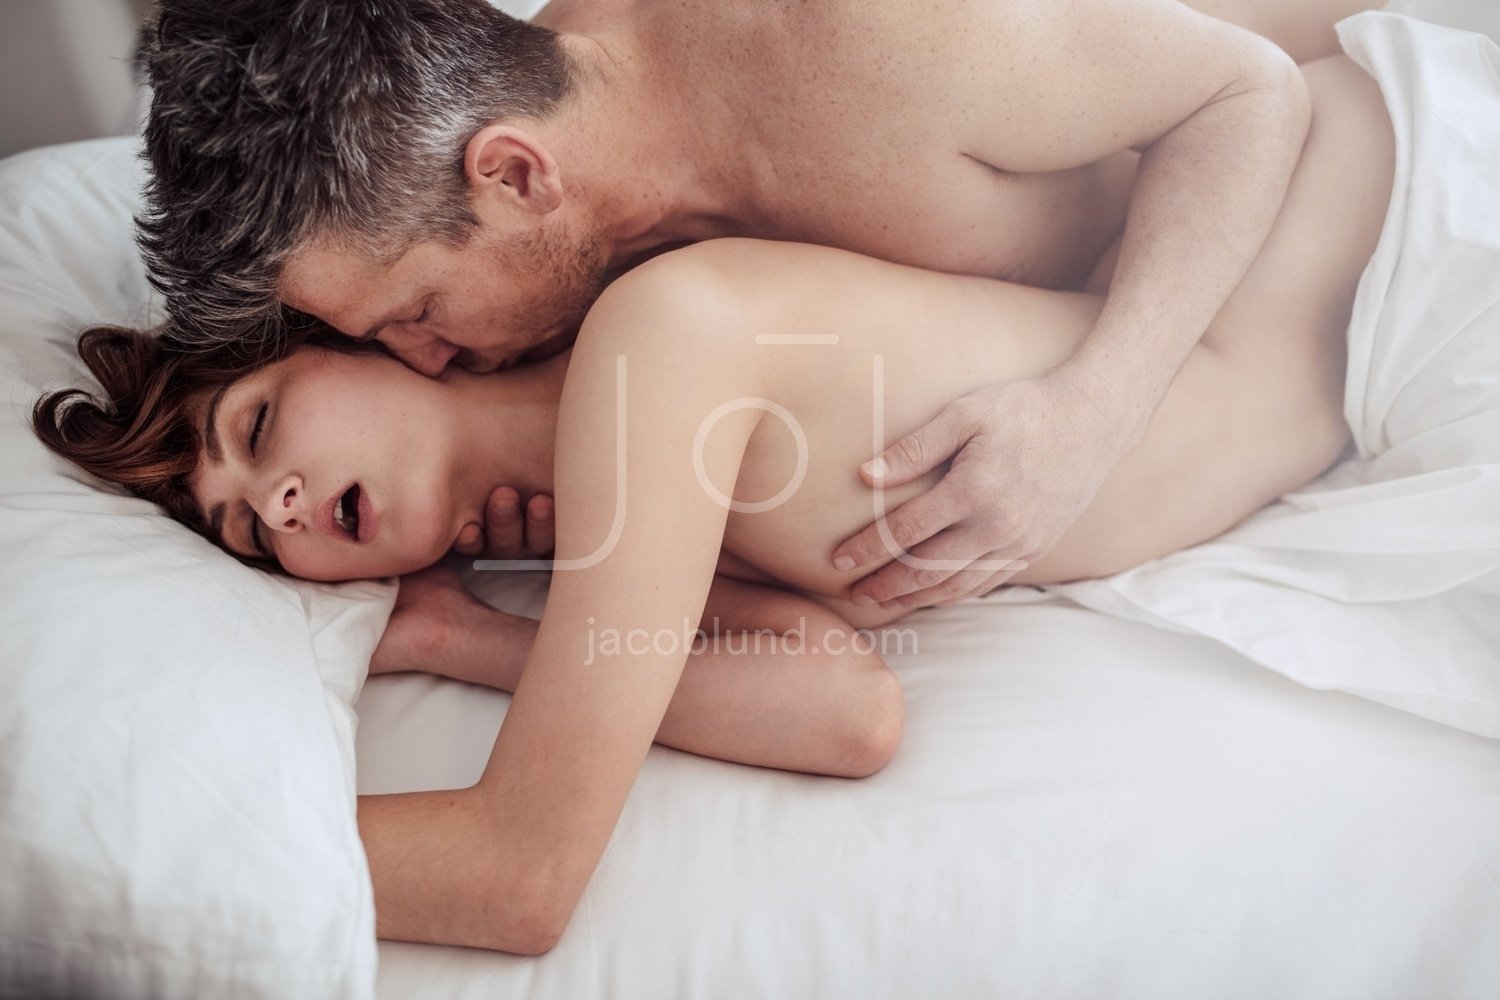 husband wife sex in bedroom